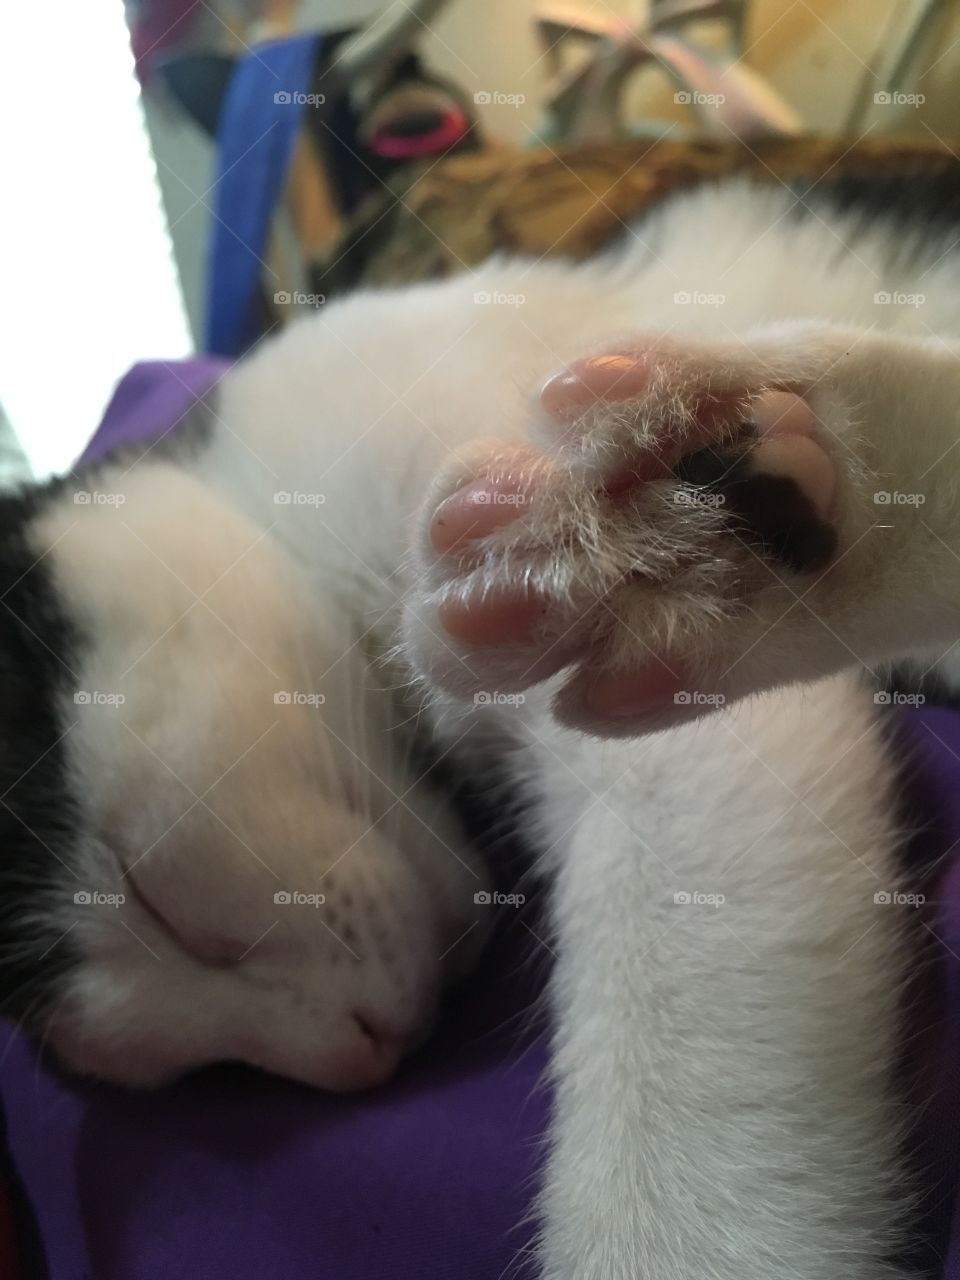 Sassy toe beans